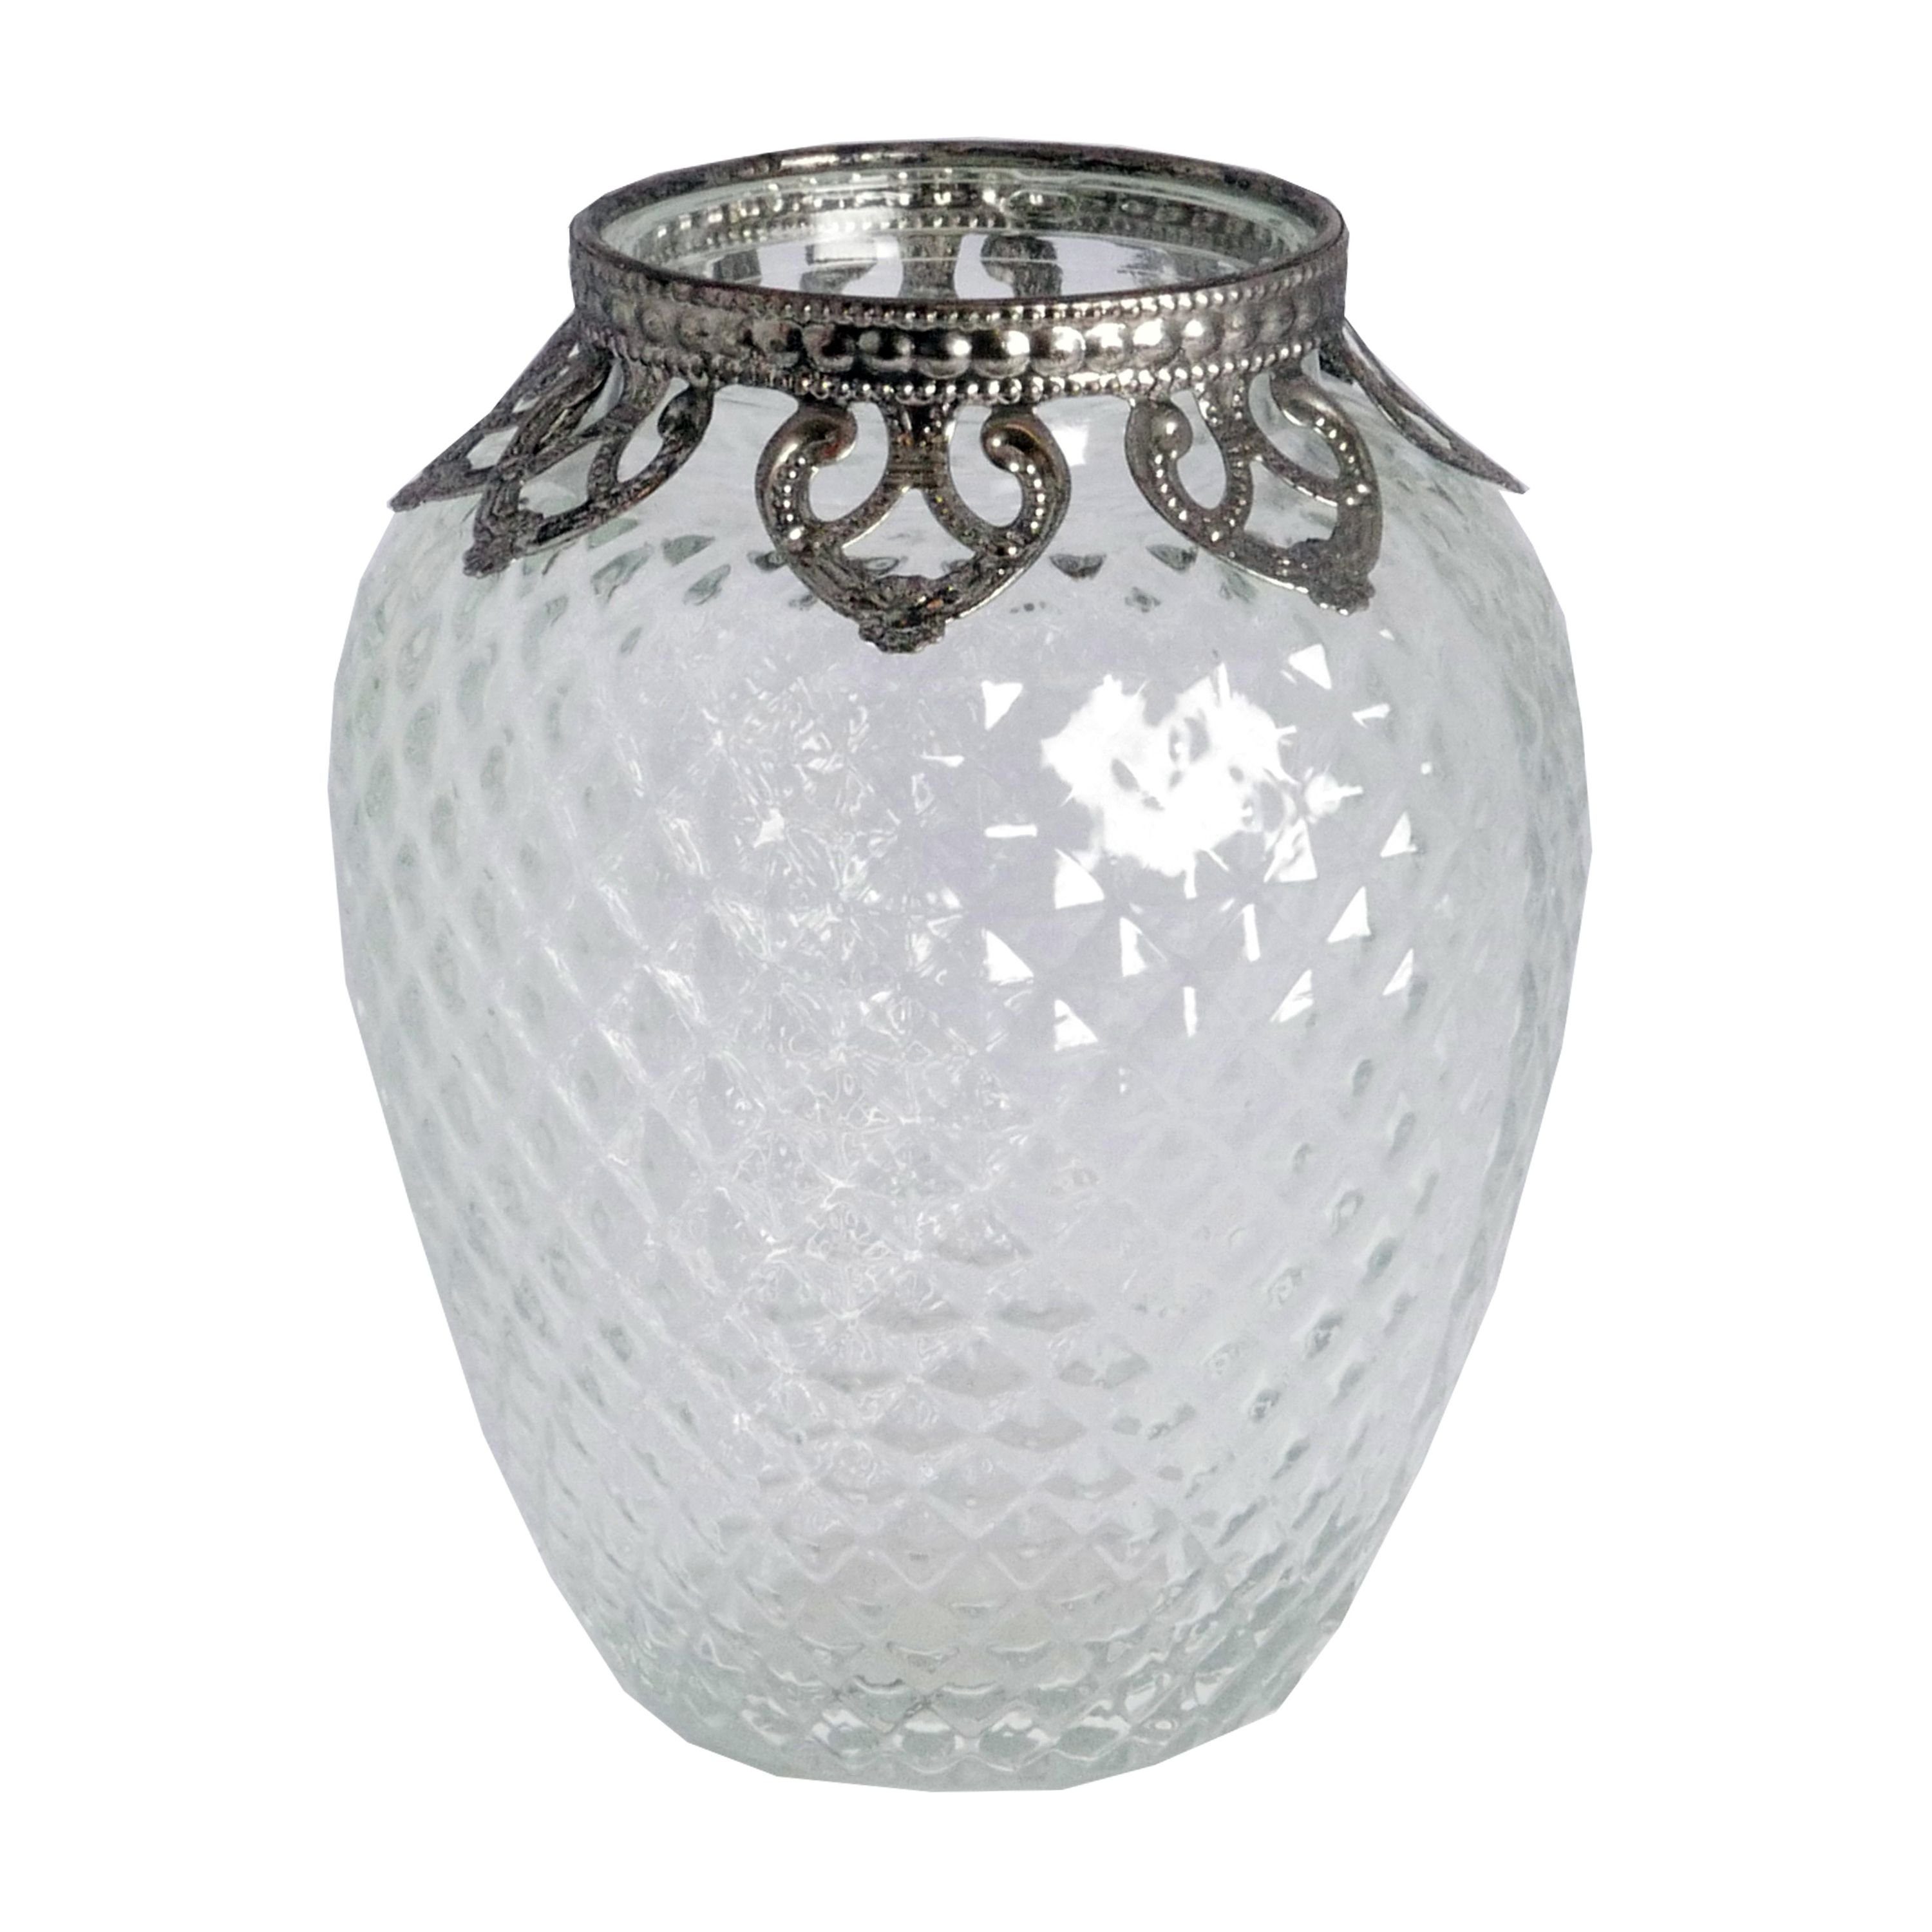 B&S Windlicht Zierrand Teelichtglas Metall